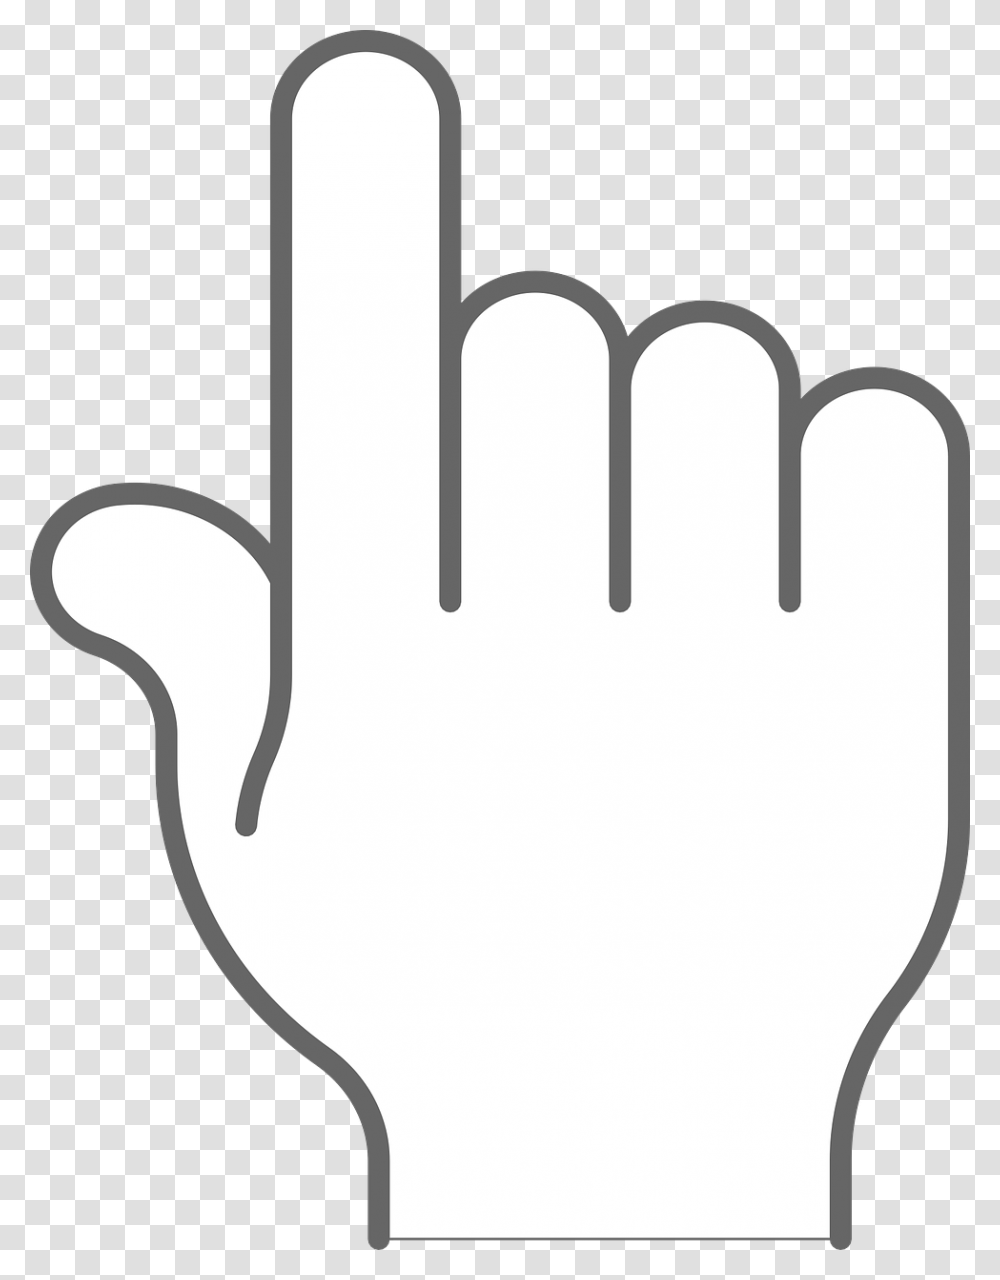 Finger Point Up Emoji Black Background, Cutlery, Fork, Stencil Transparent Png